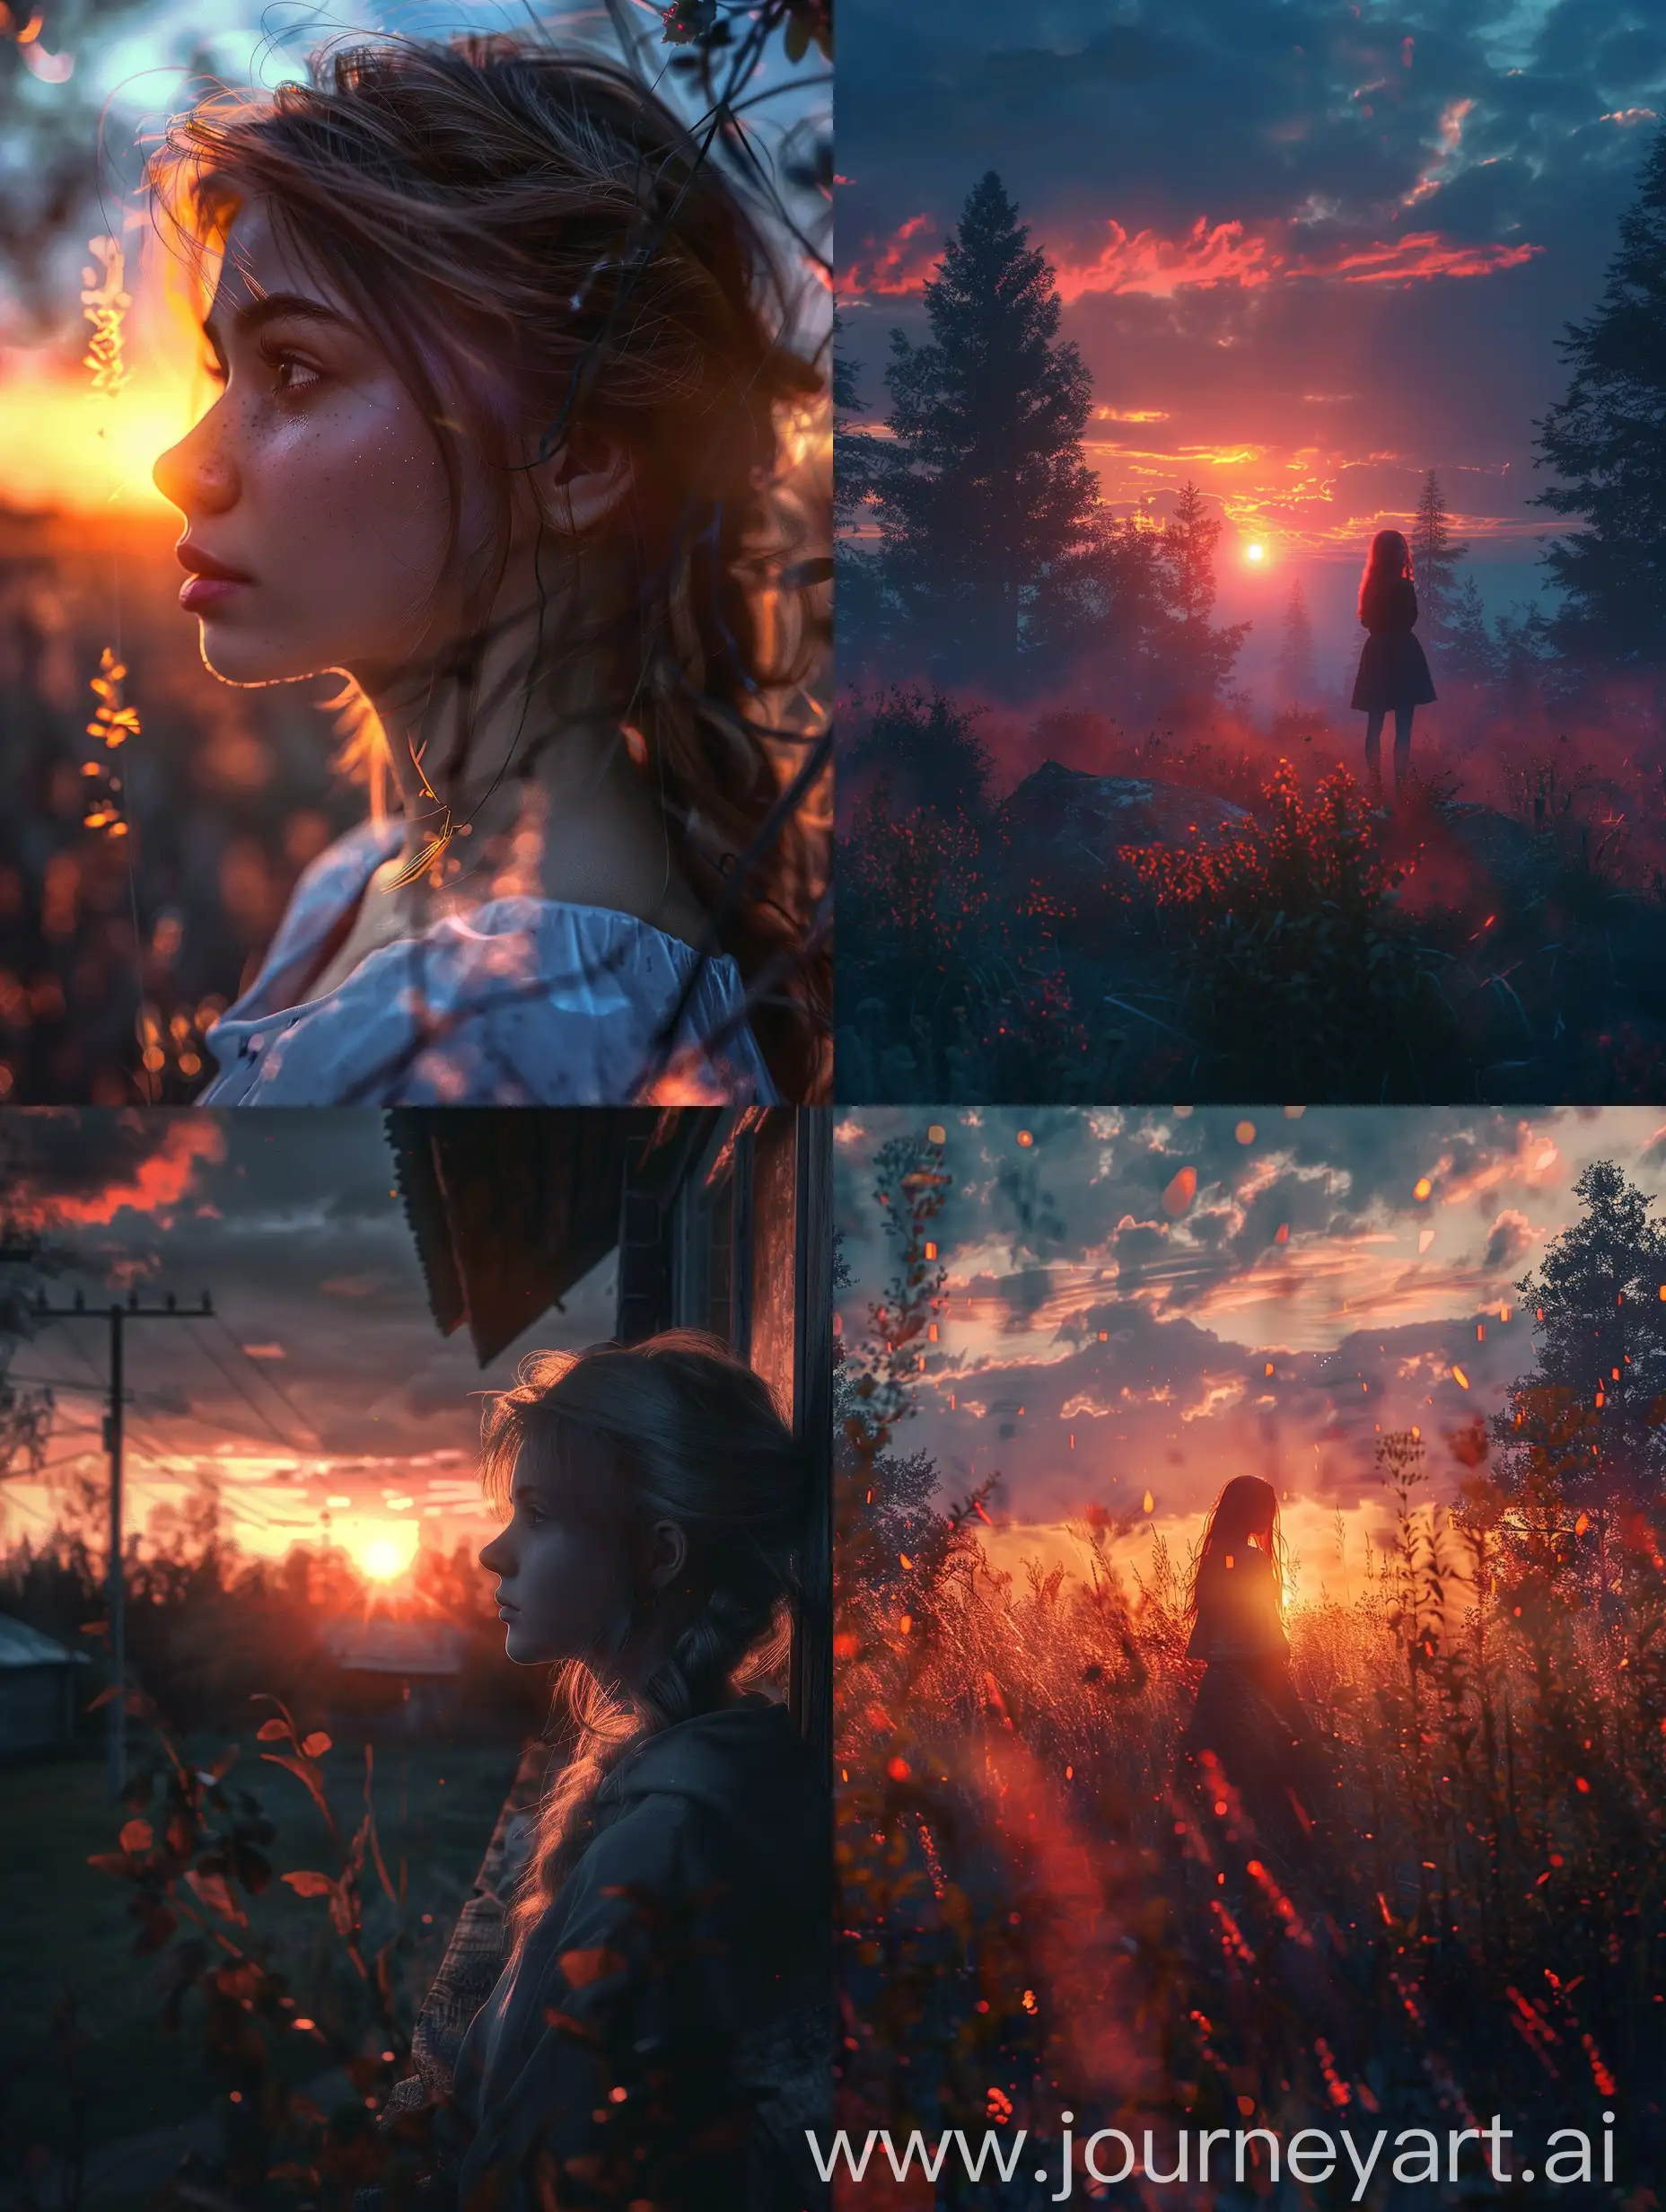 Ultrarealistic-Sunrise-Capturing-the-Magic-of-a-Russian-Fairytale